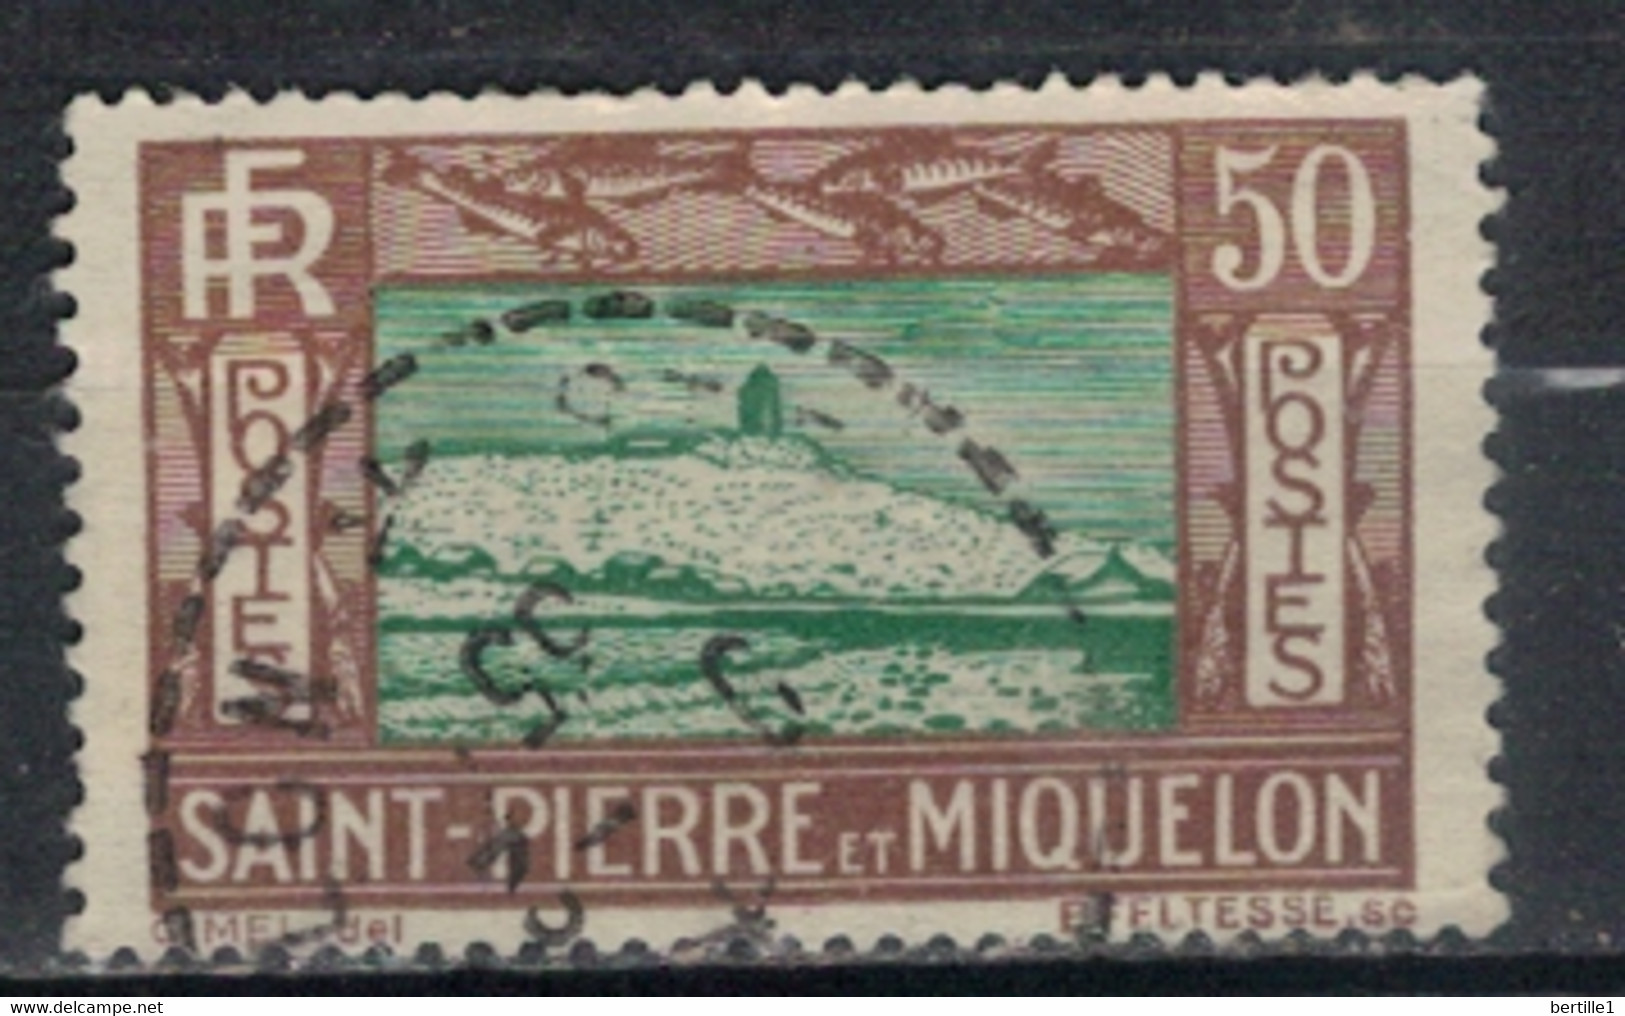 SAINT PIERRE ET MIQUELON             N°  YVERT  147  (7)  OBLITERE     ( OB    06/ 14 ) - Used Stamps